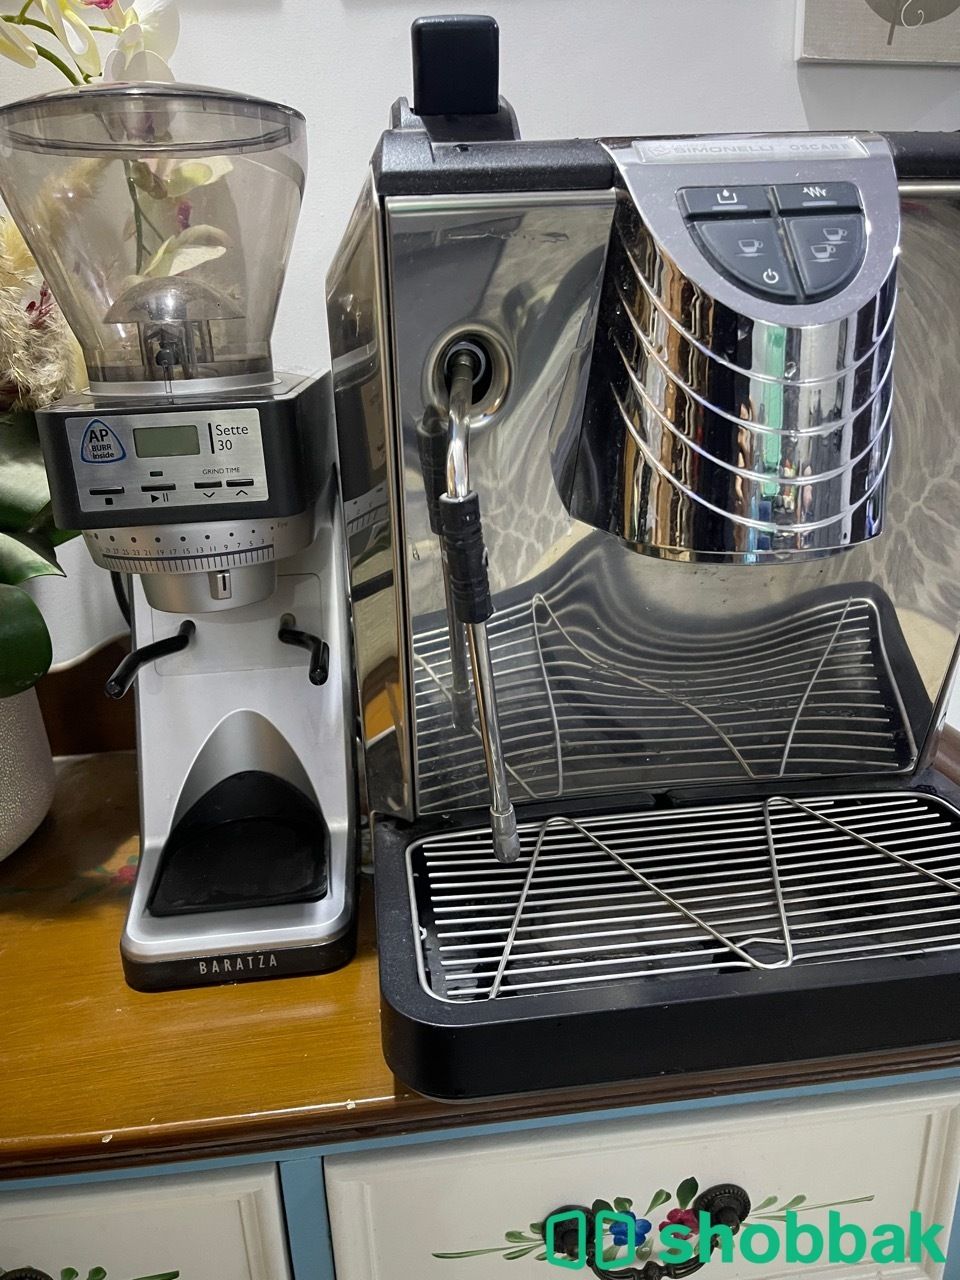 مكينة قهوة نوفا اوسكار 2 + طاحونة Shobbak Saudi Arabia